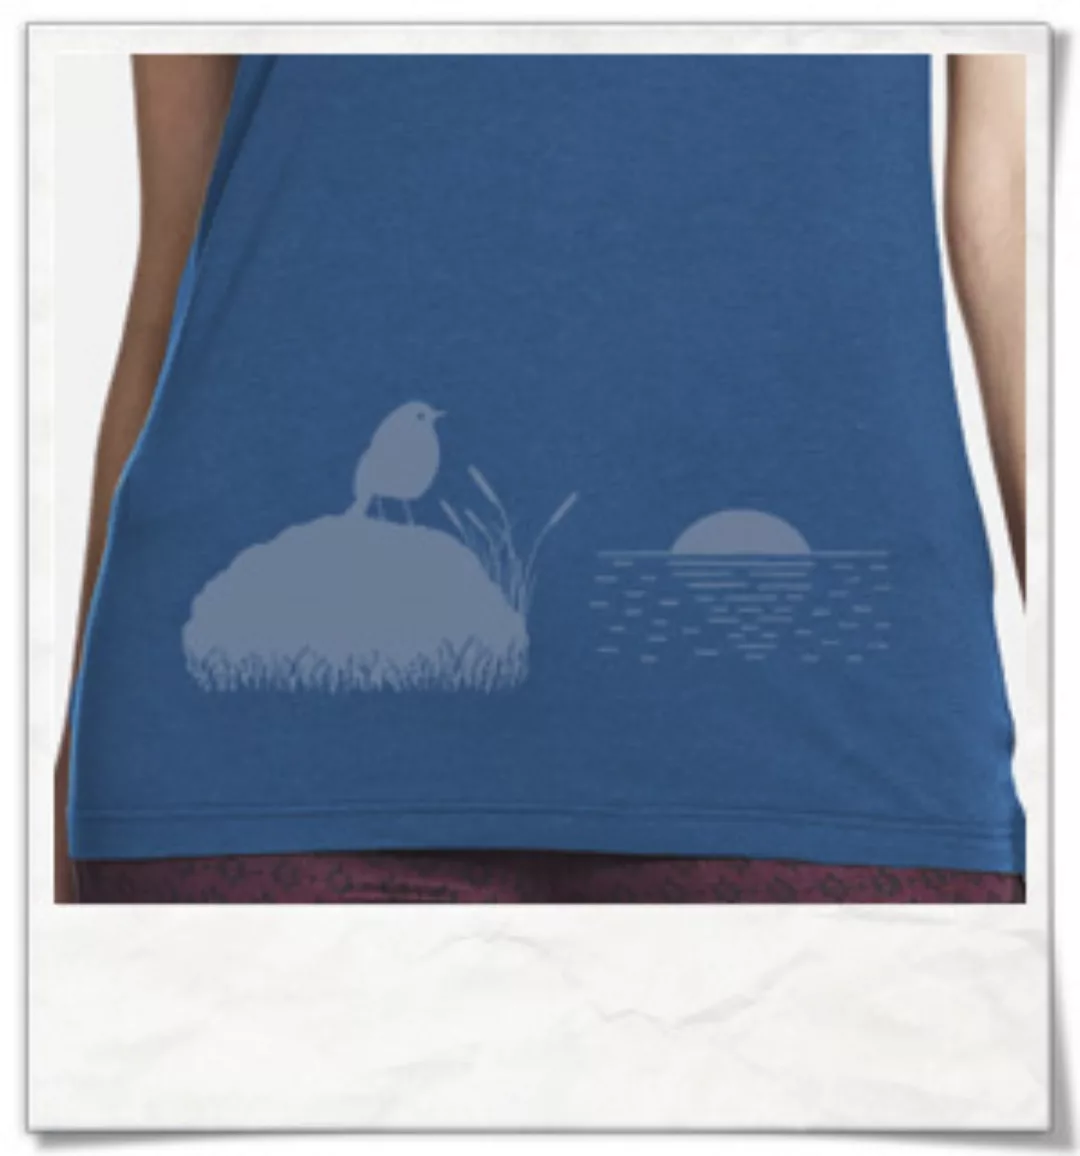 Vogel Bei Sonnenuntergang / Denim-blau & Grau / Bambus T-shirt günstig online kaufen